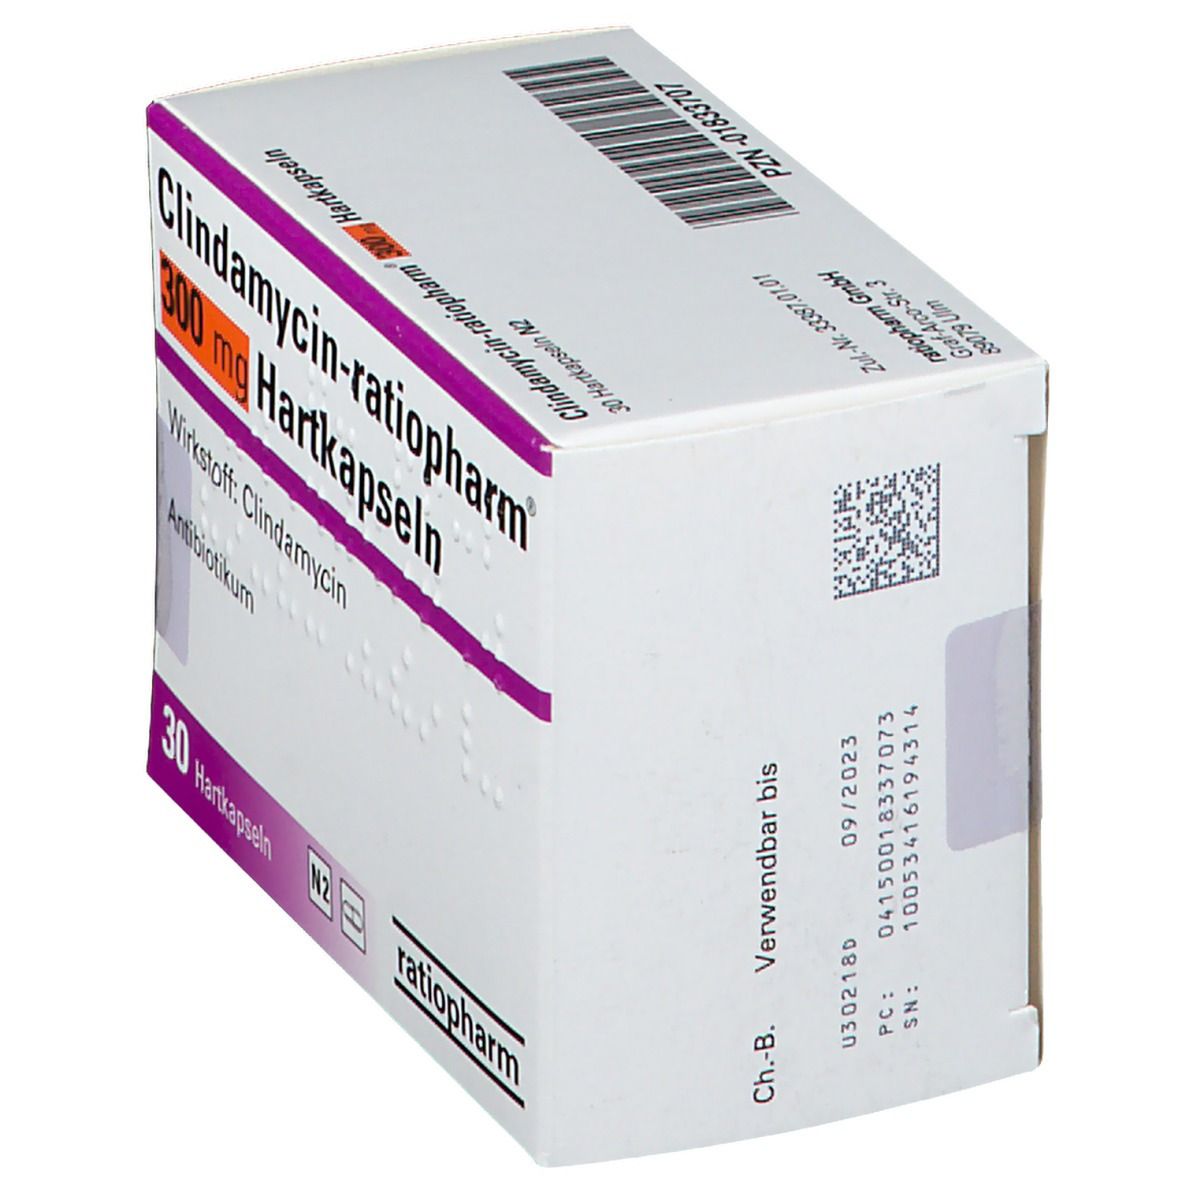 Climdamycin-ratiopharm® 300 mg